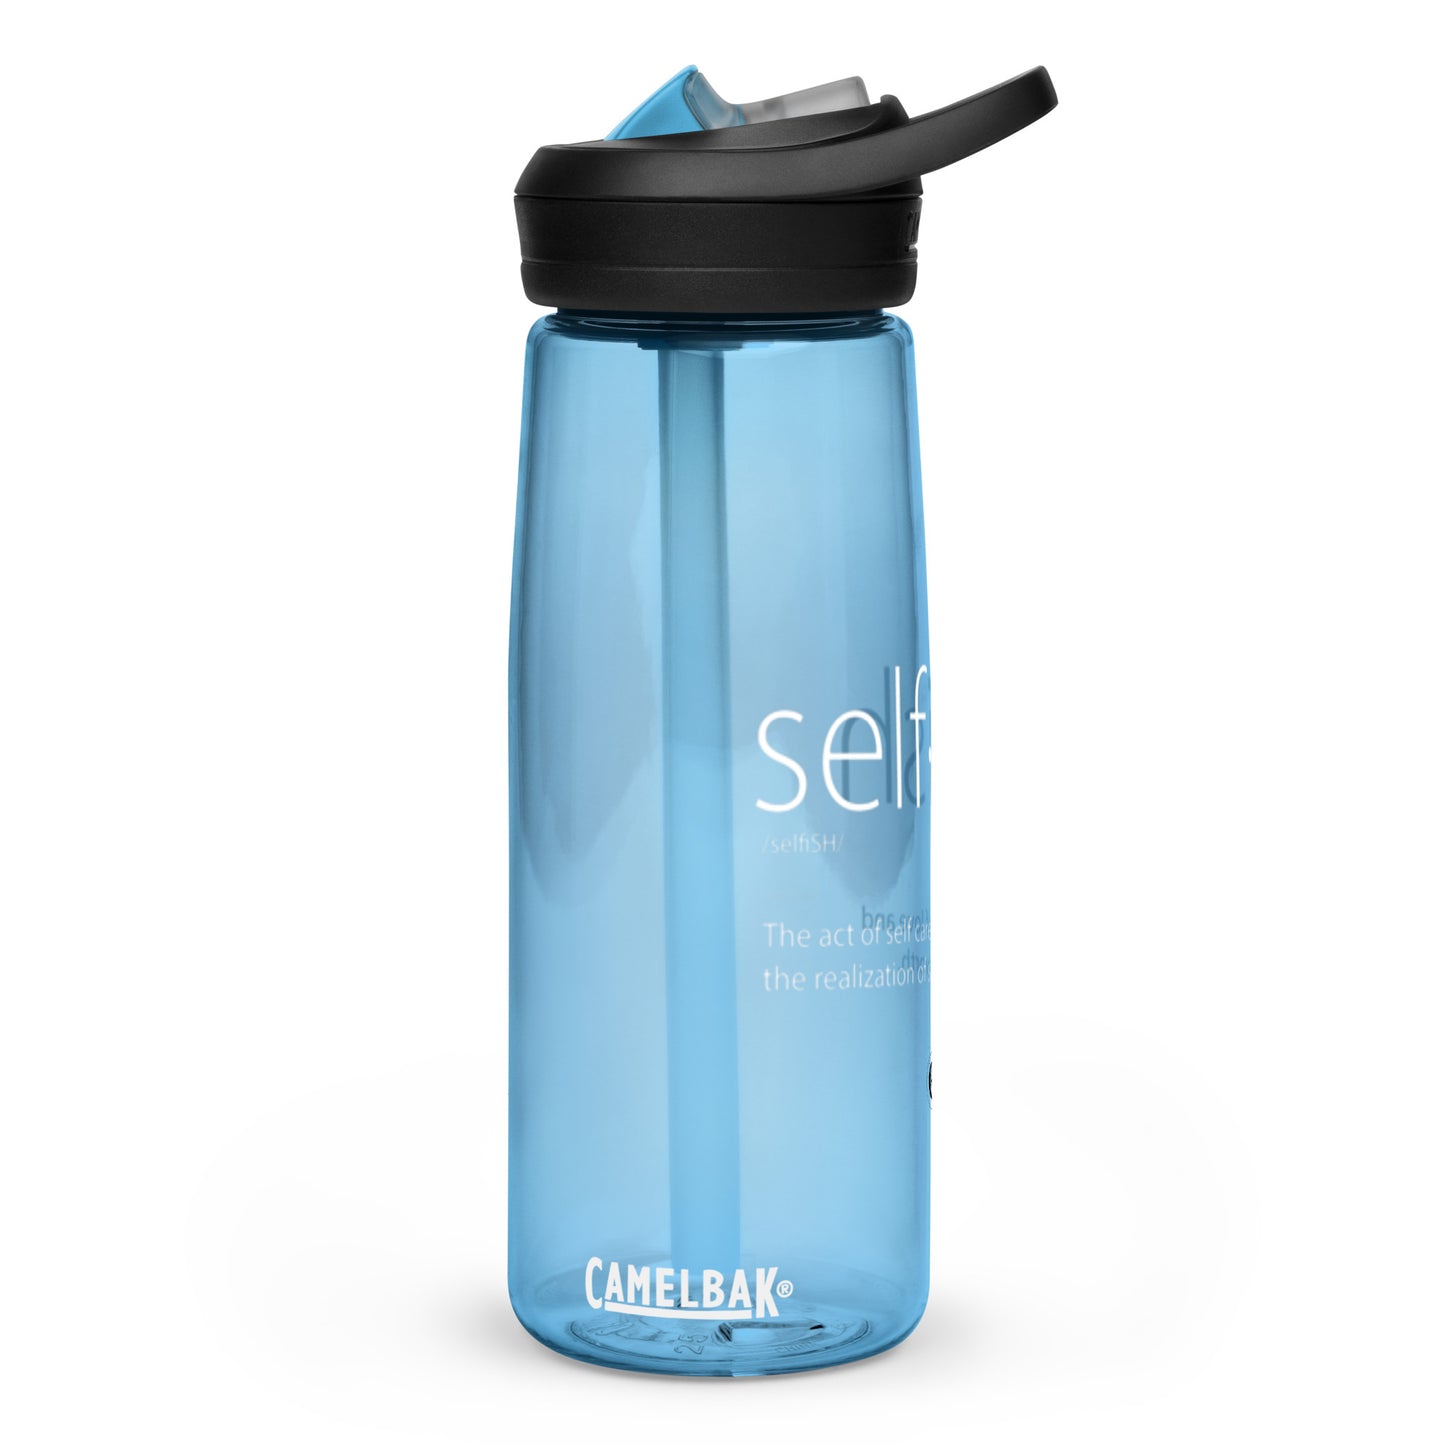 Self-Ish Water Bottle